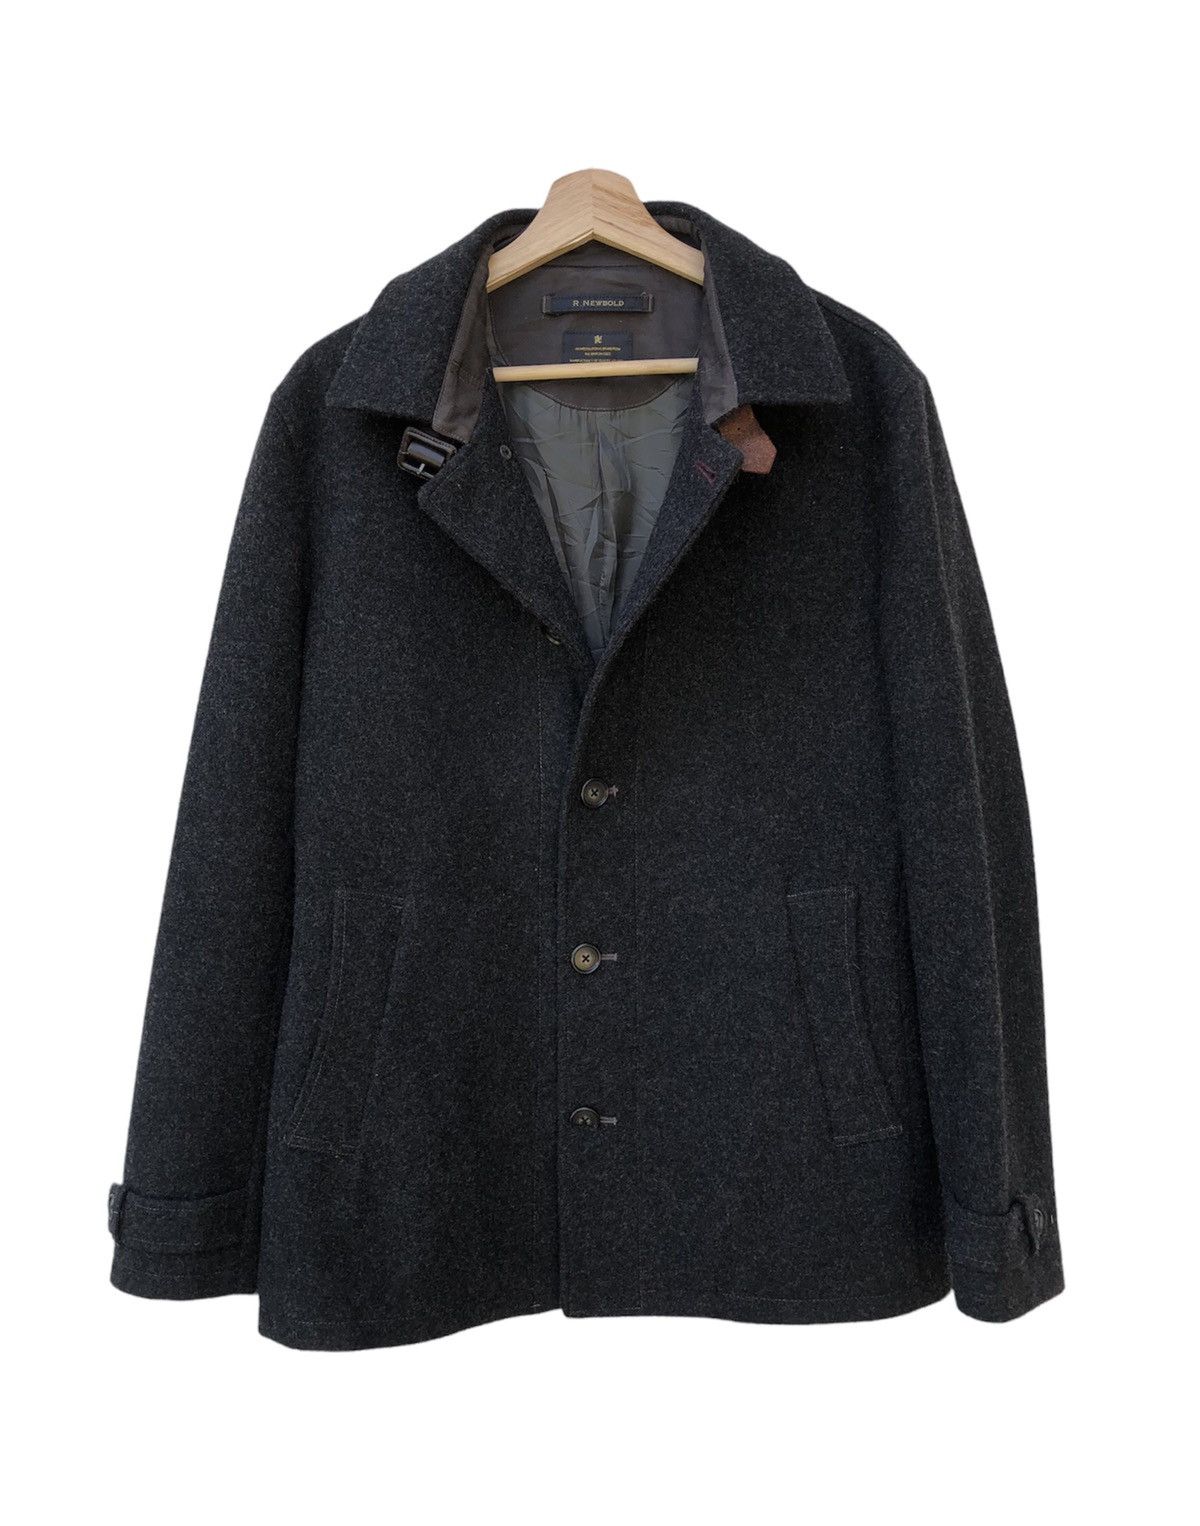 🧨OFFER R.Newbold Long Coat Jacket - 1